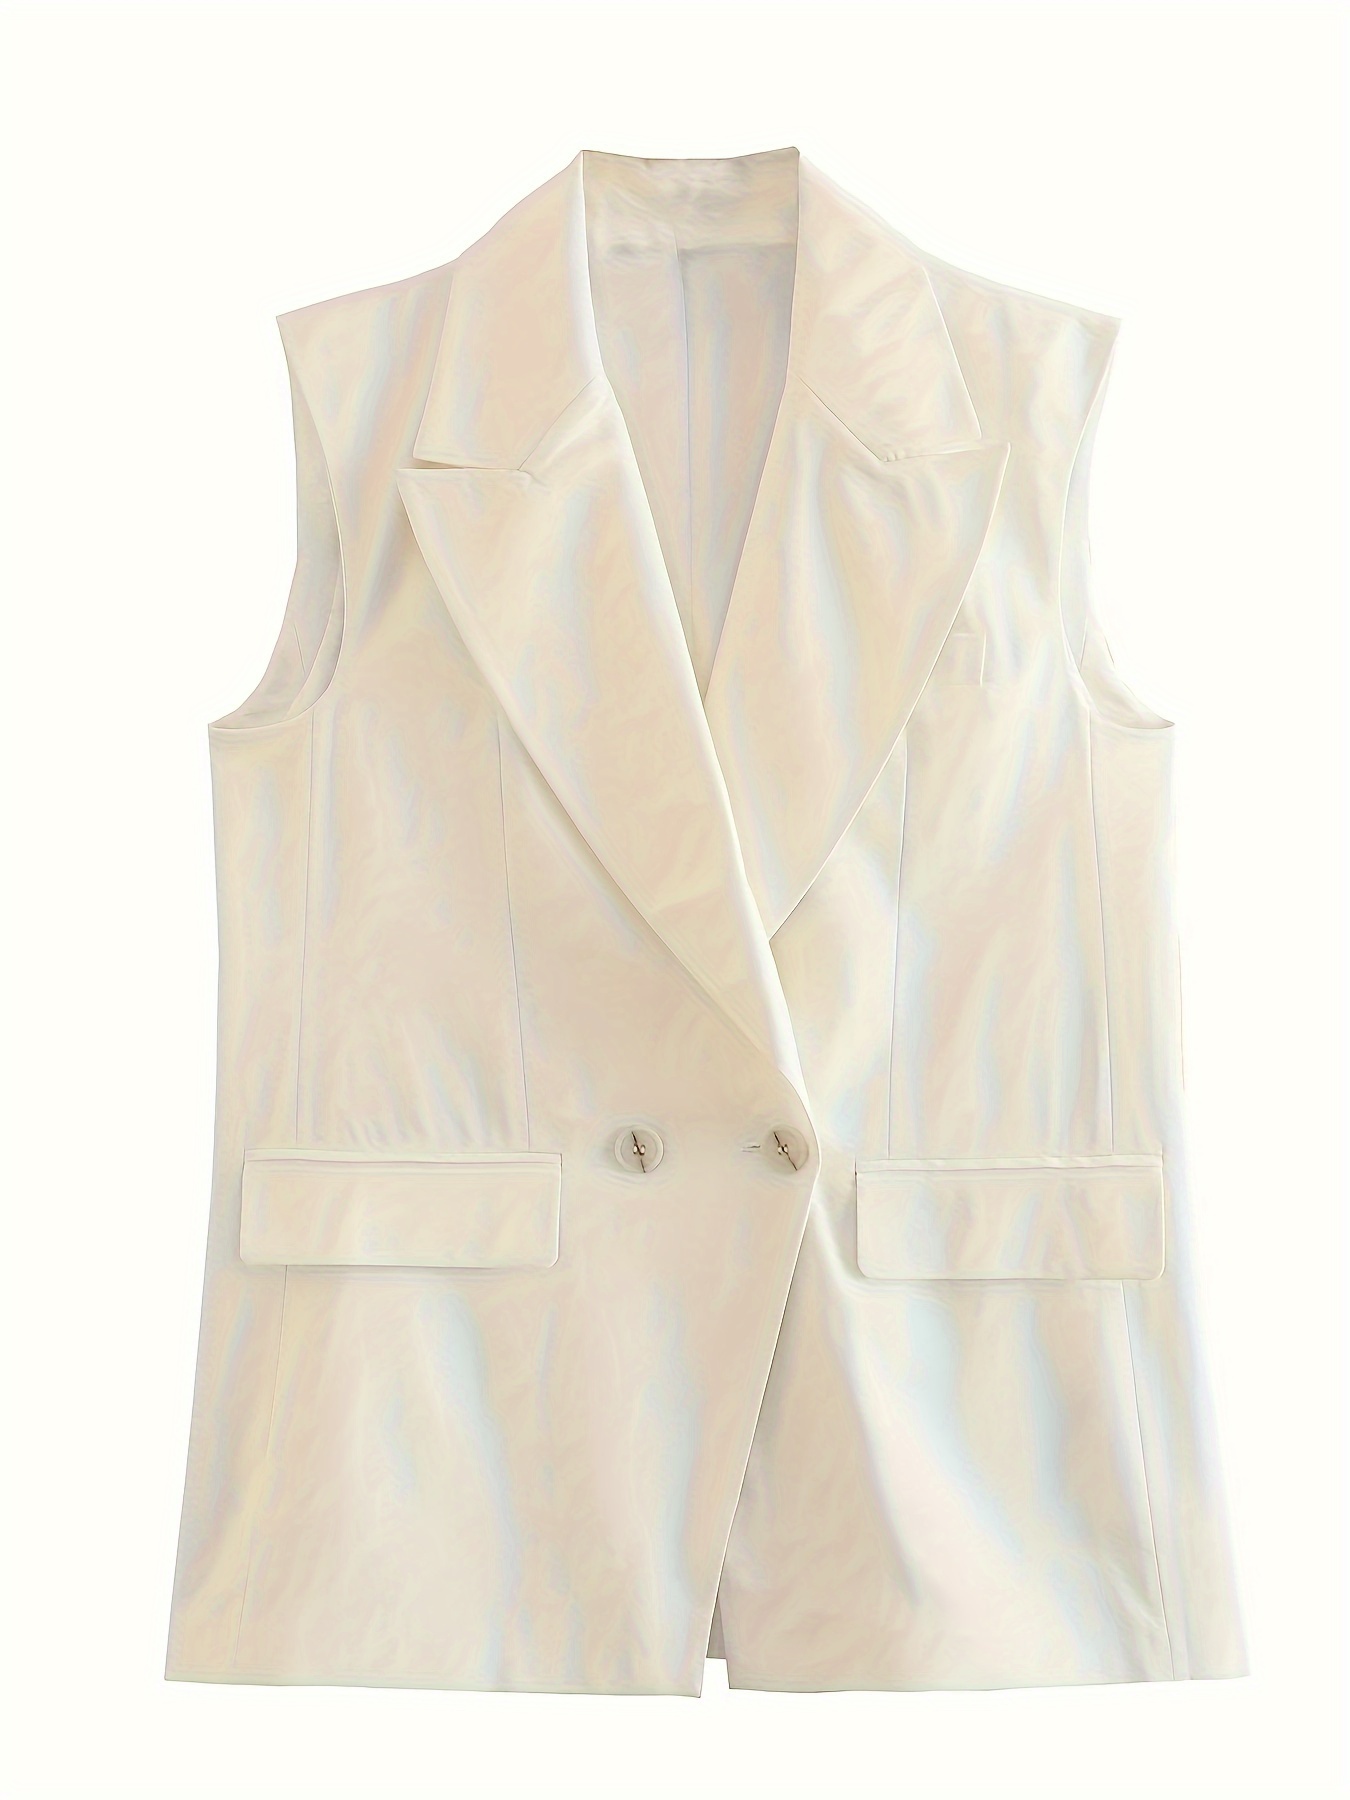 V VOCNI Long Vest for Women Sleeveless Blazer Jacket Open Front